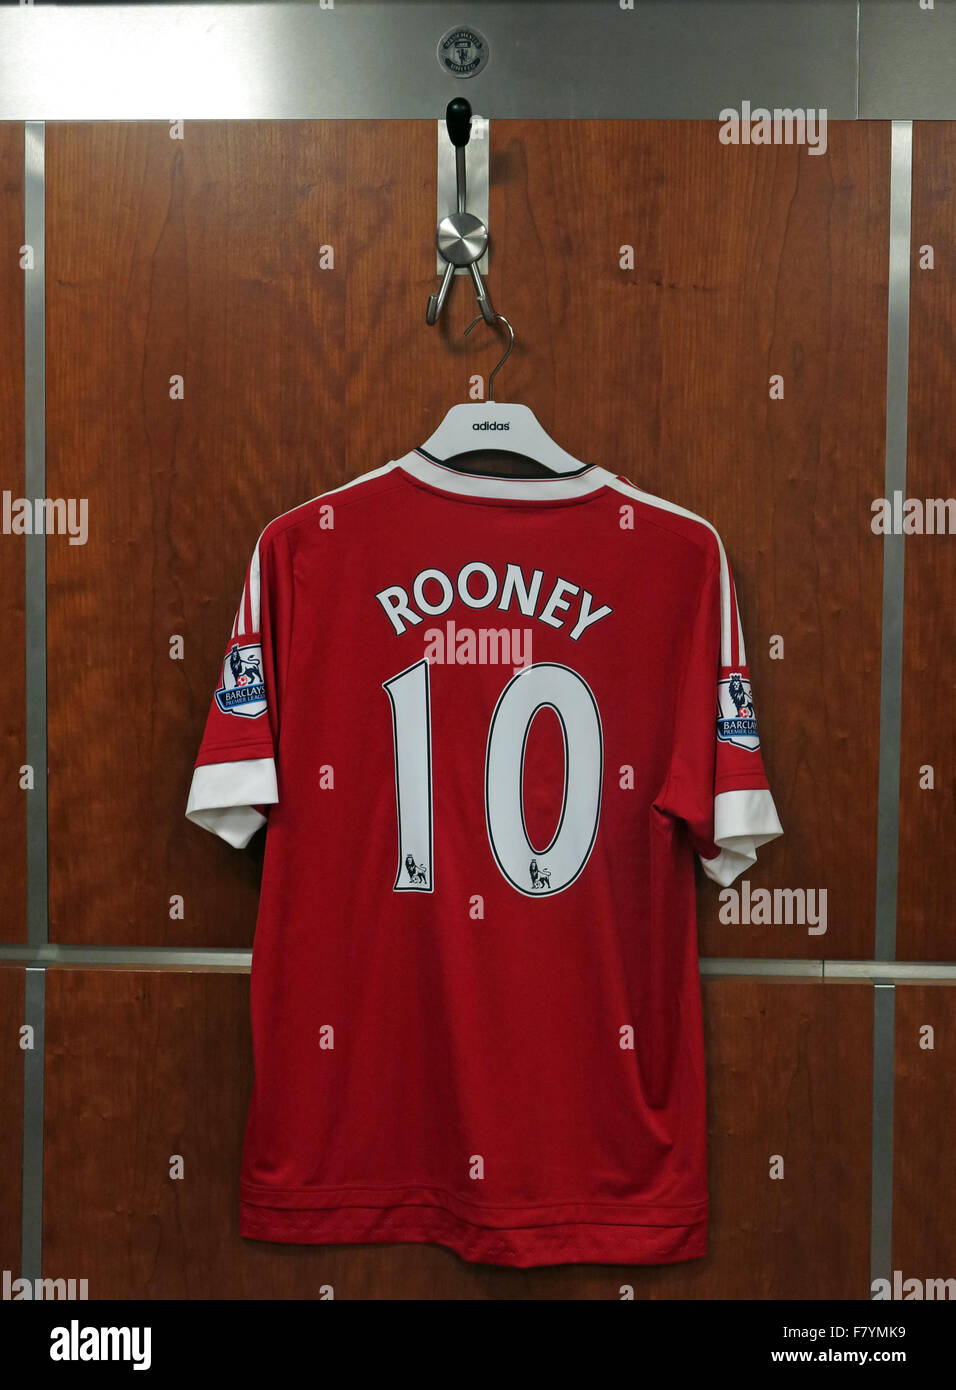 Wayne Rooney camicia in spogliatoio MUFC, sul gancio ufficiale del Manchester United, Old Trafford, Inghilterra, UK, M16 0RA Foto Stock